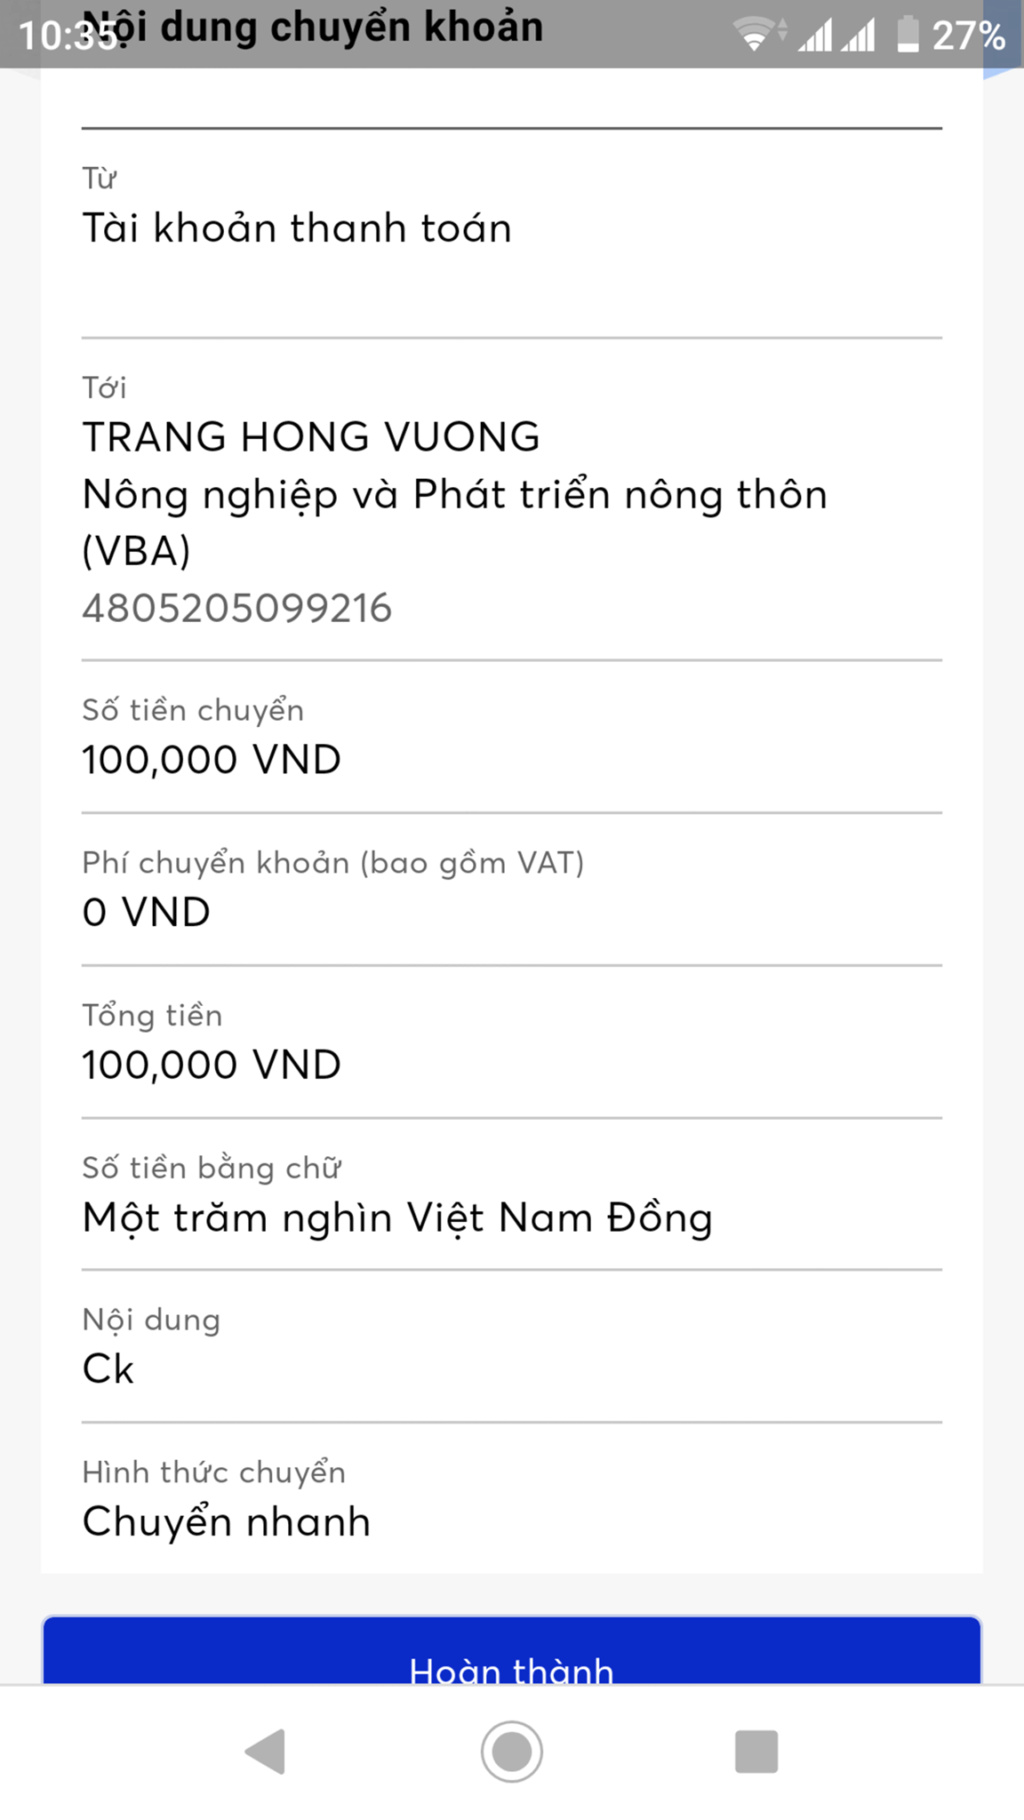 Bóc phốt GM Tên Trang Hong Vuong 13196510